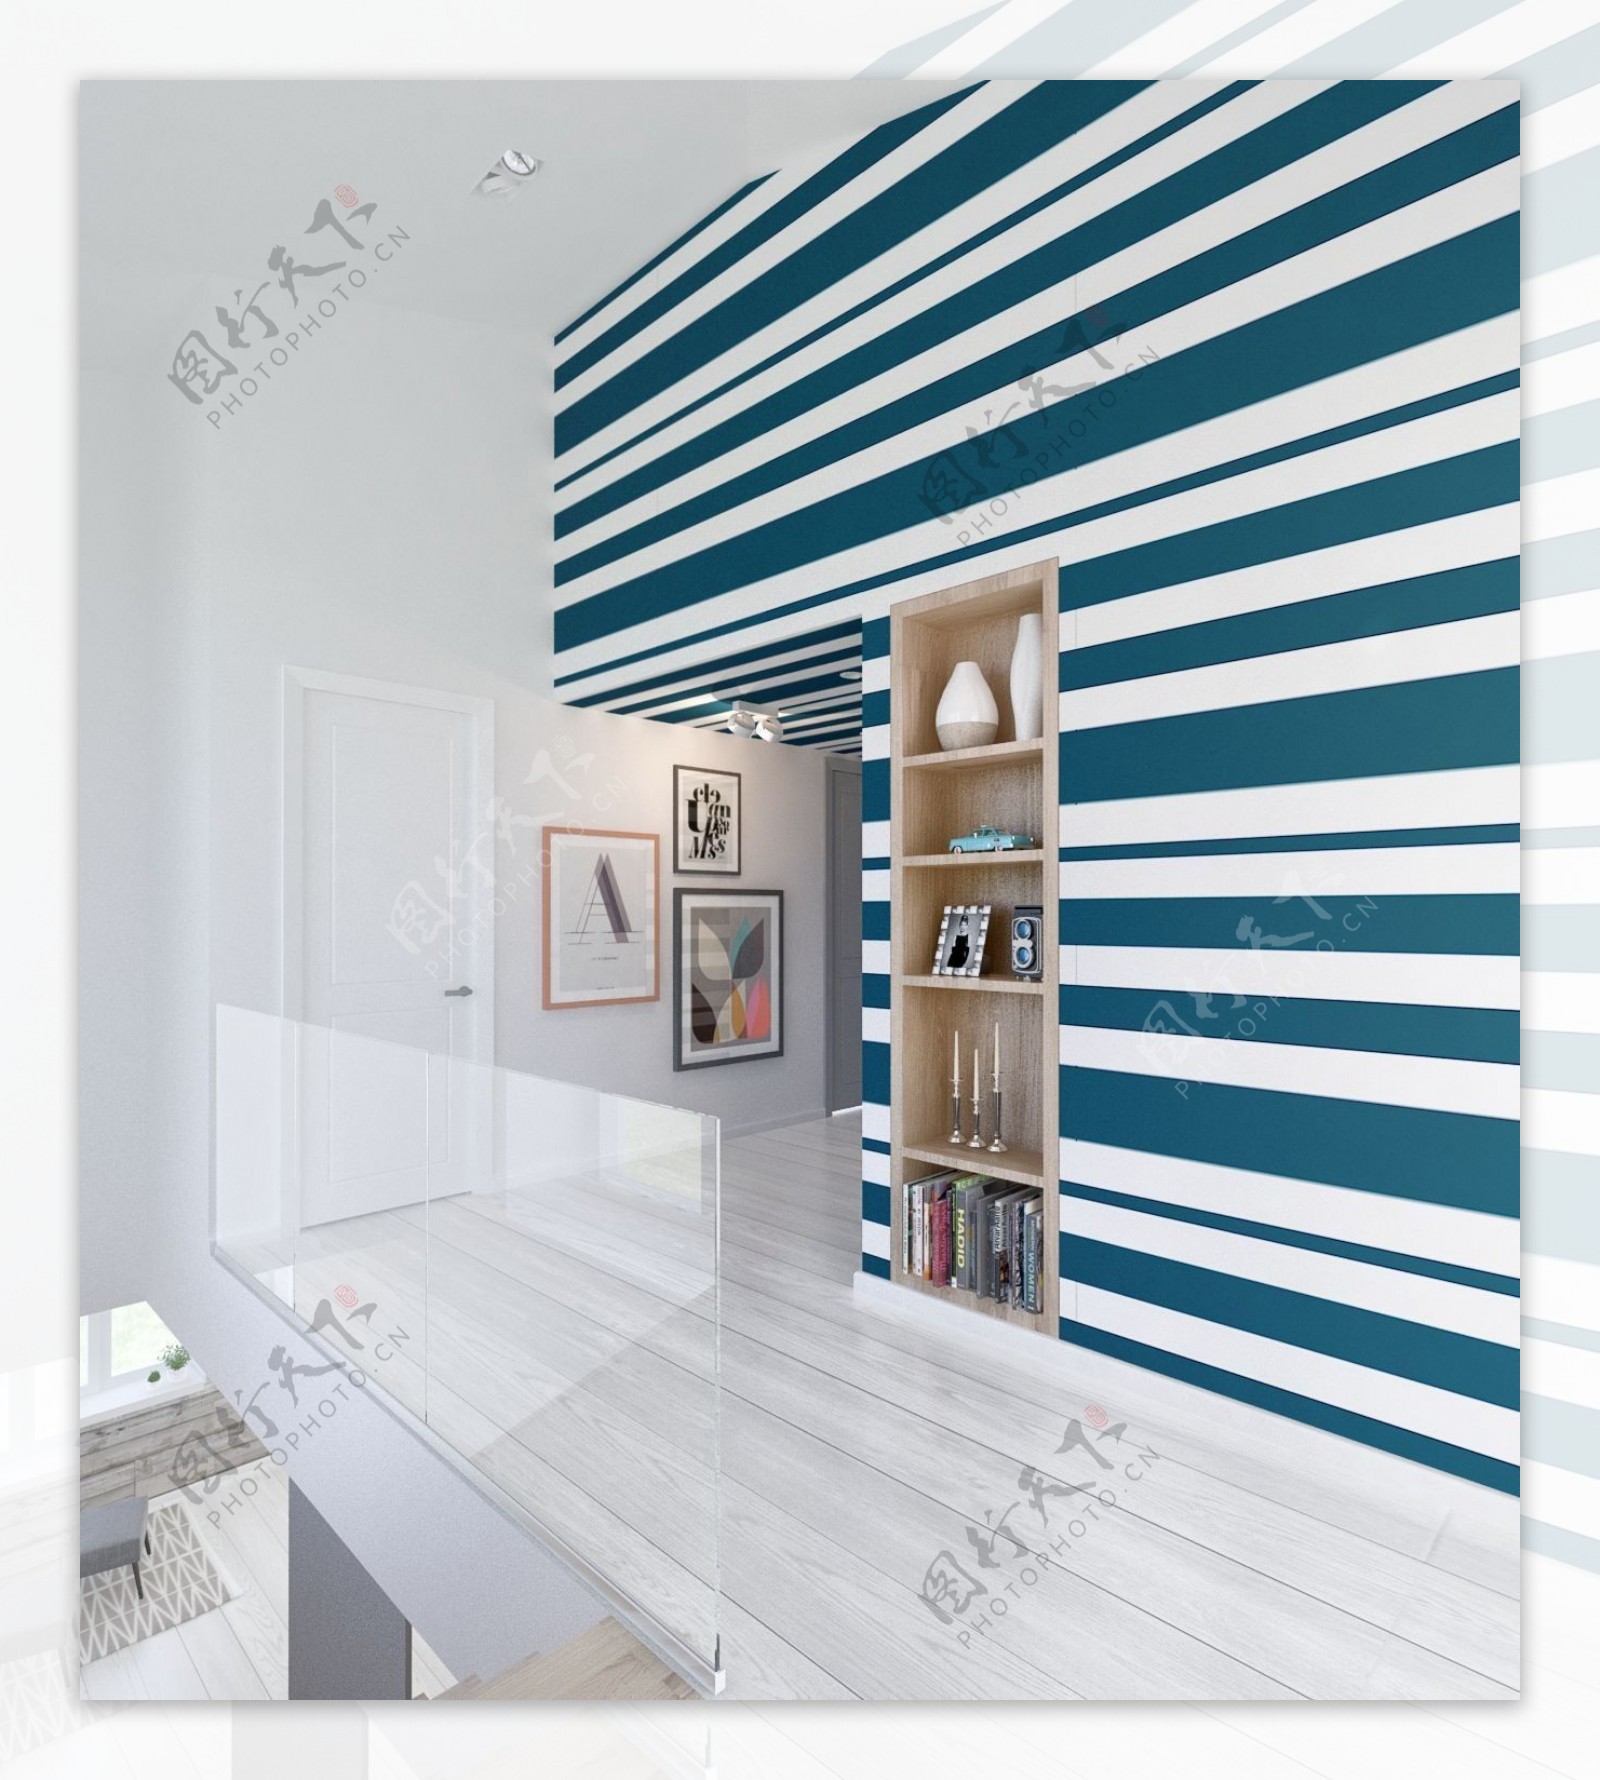 现代时尚客厅白蓝条纹背景墙室内装修效果图